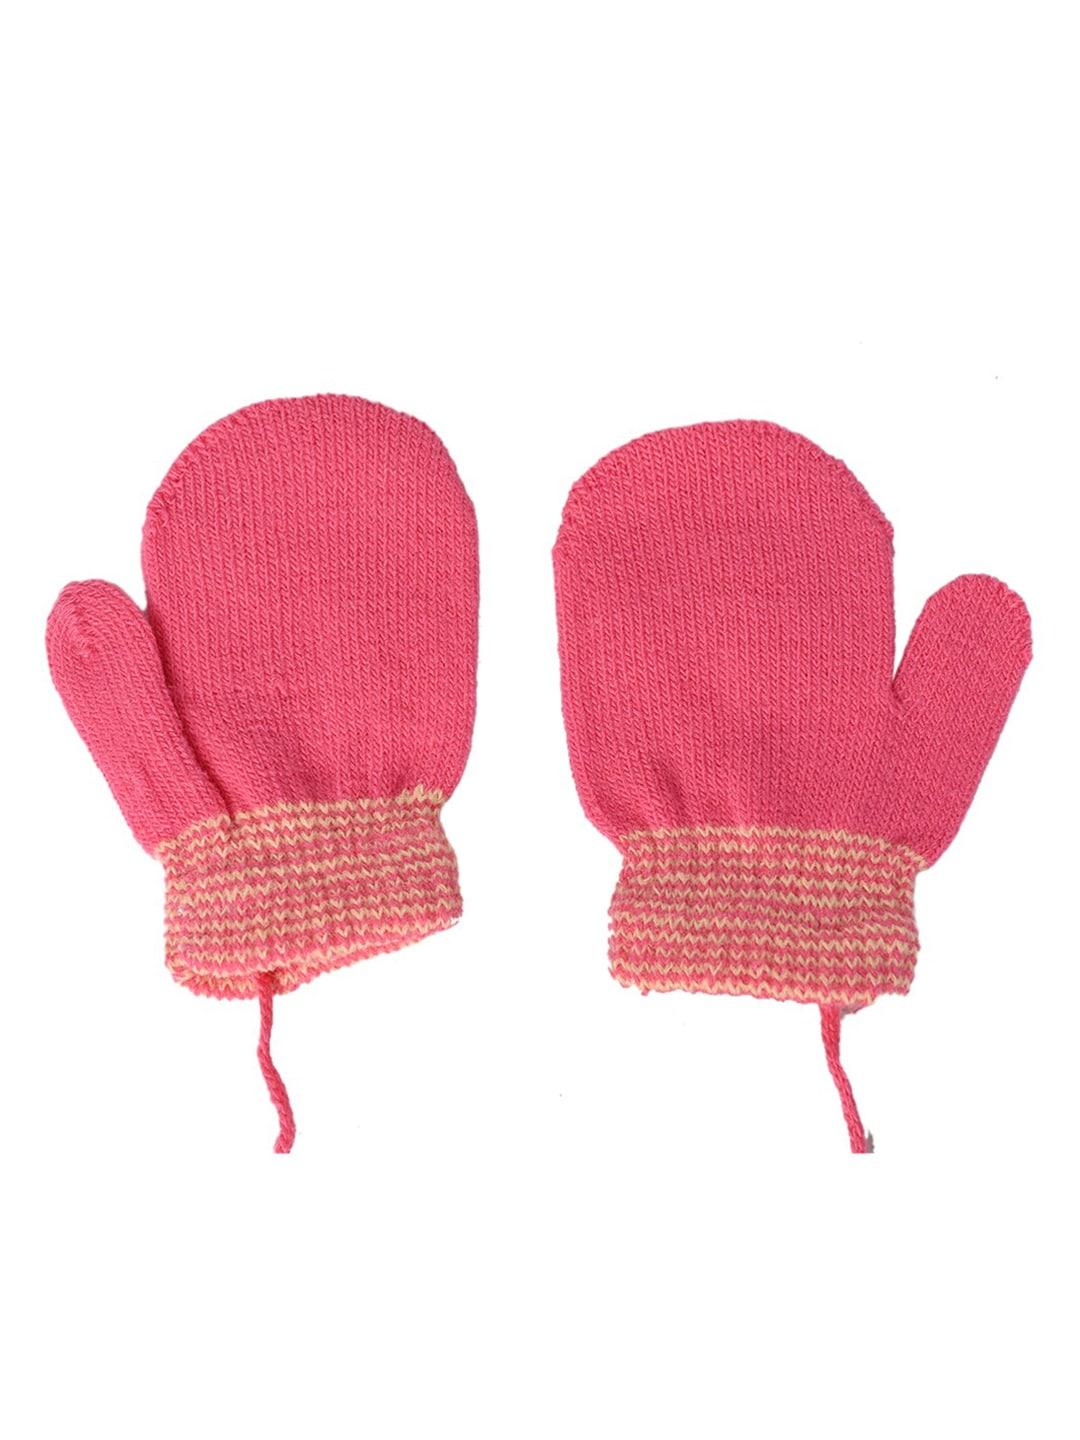 kid-o-world girls striped woolen winter gloves